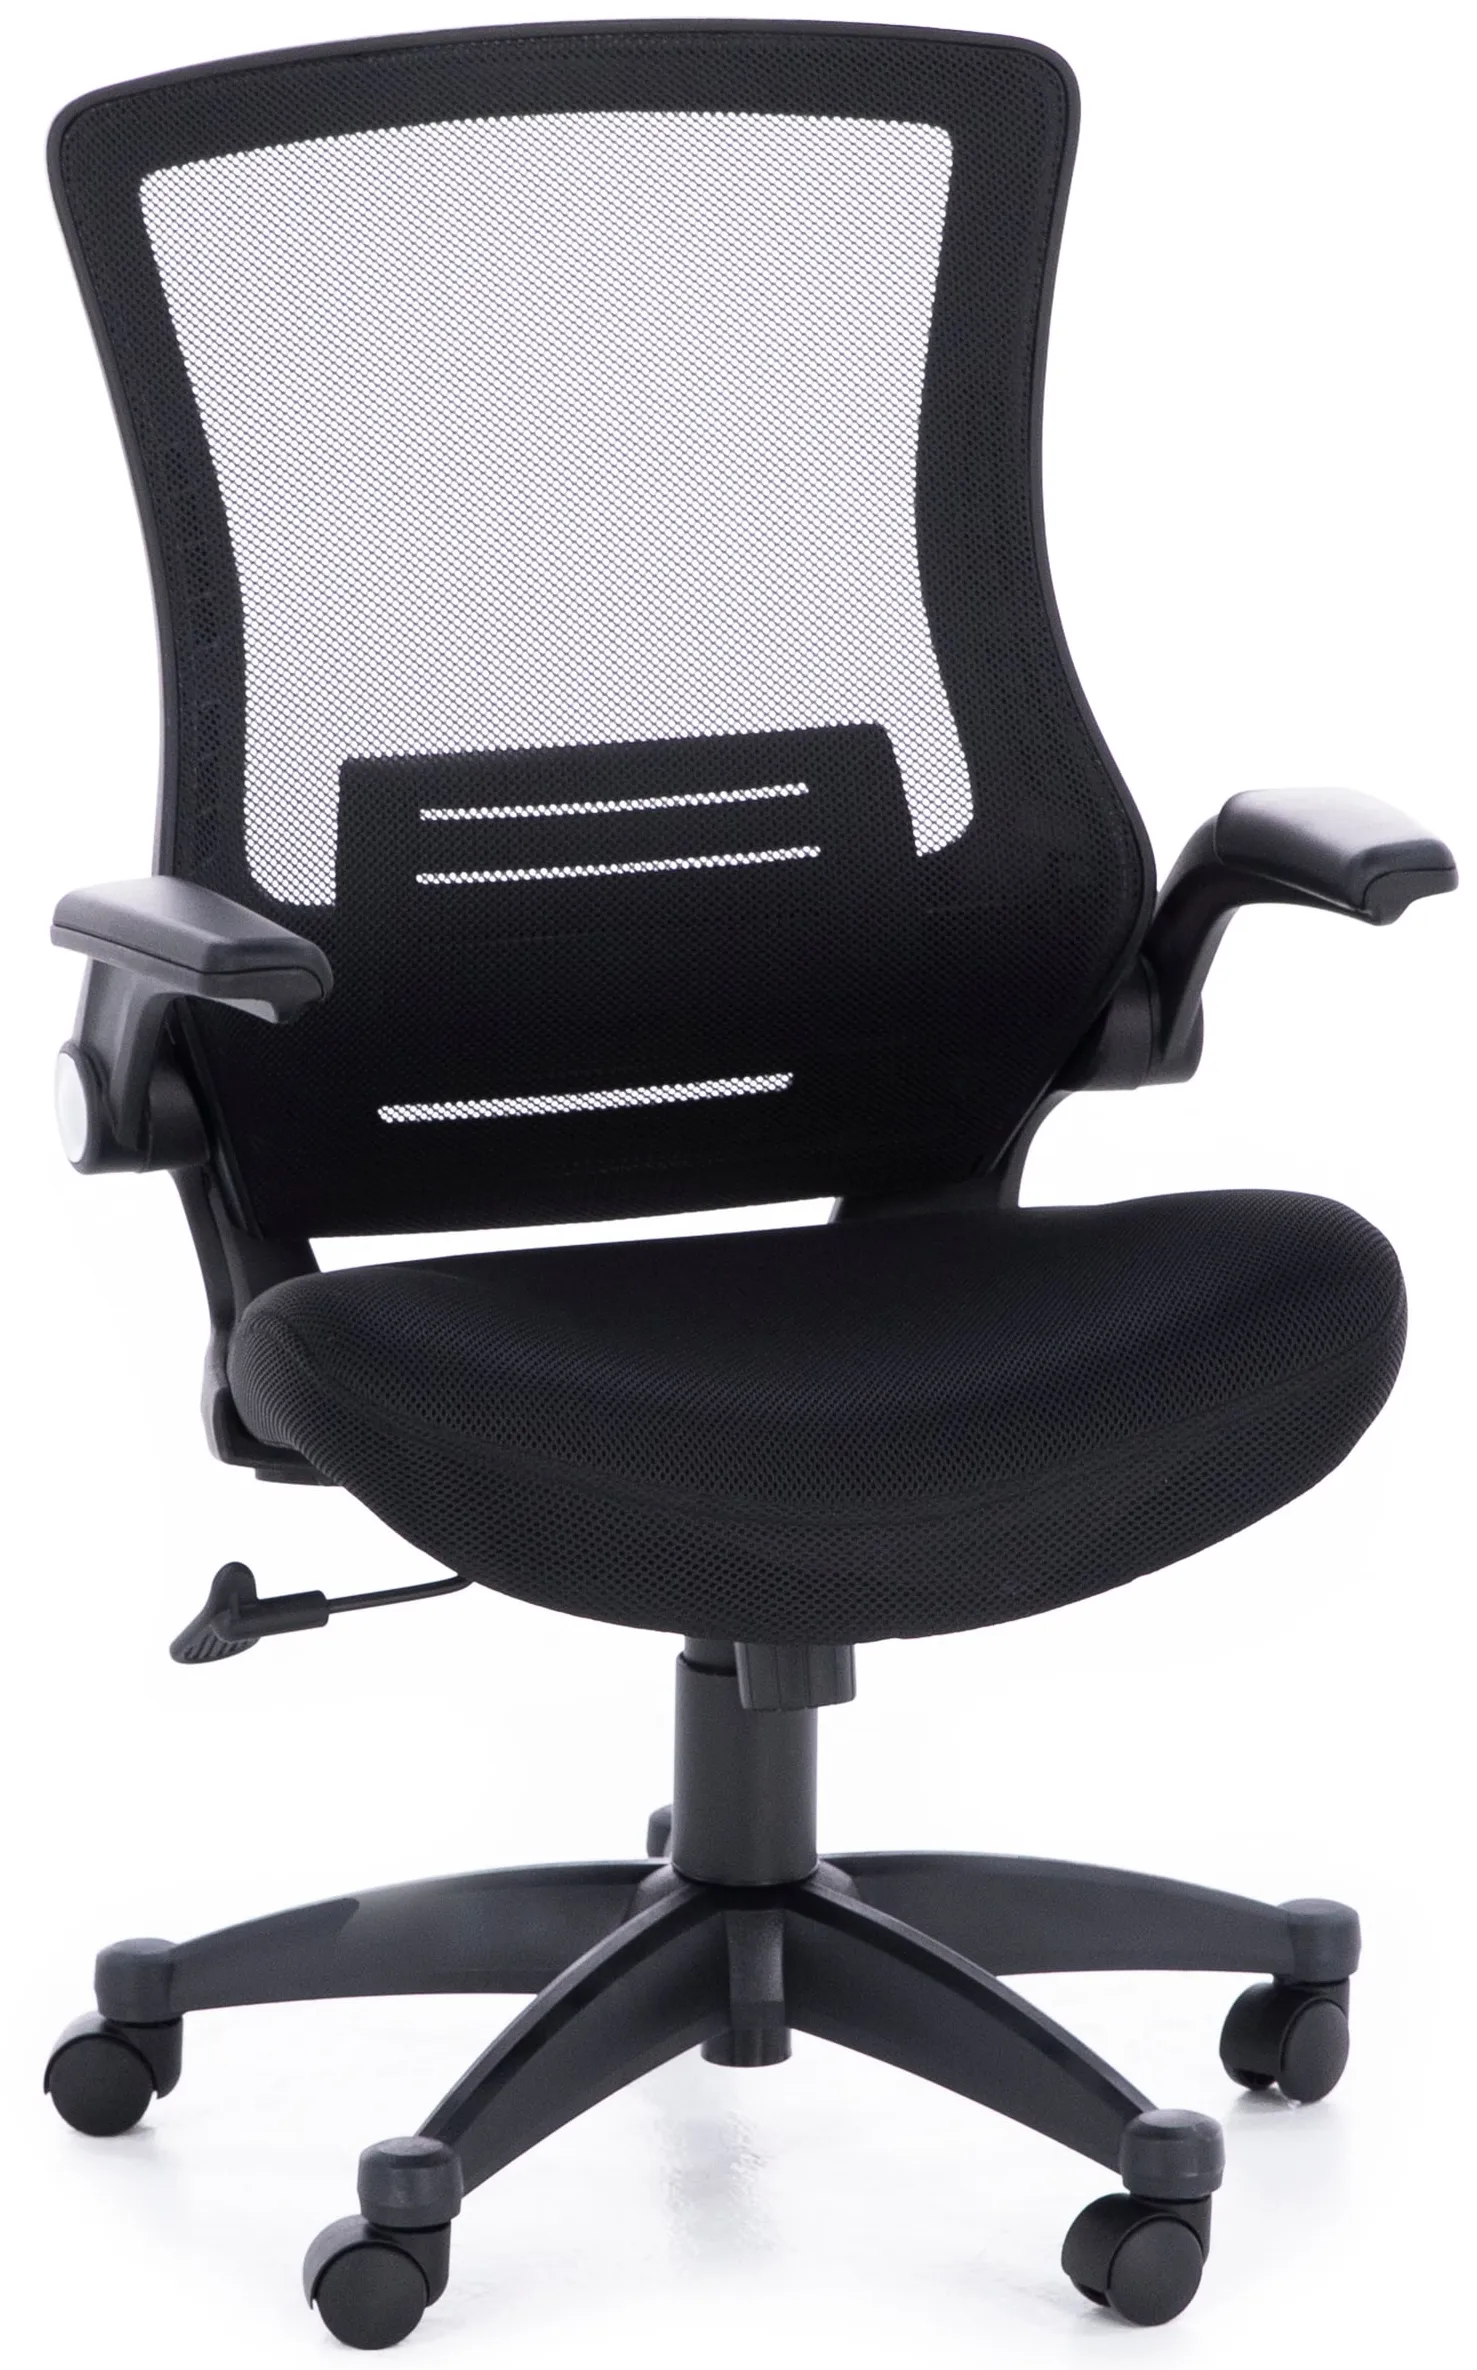 Lumbar Support Chair